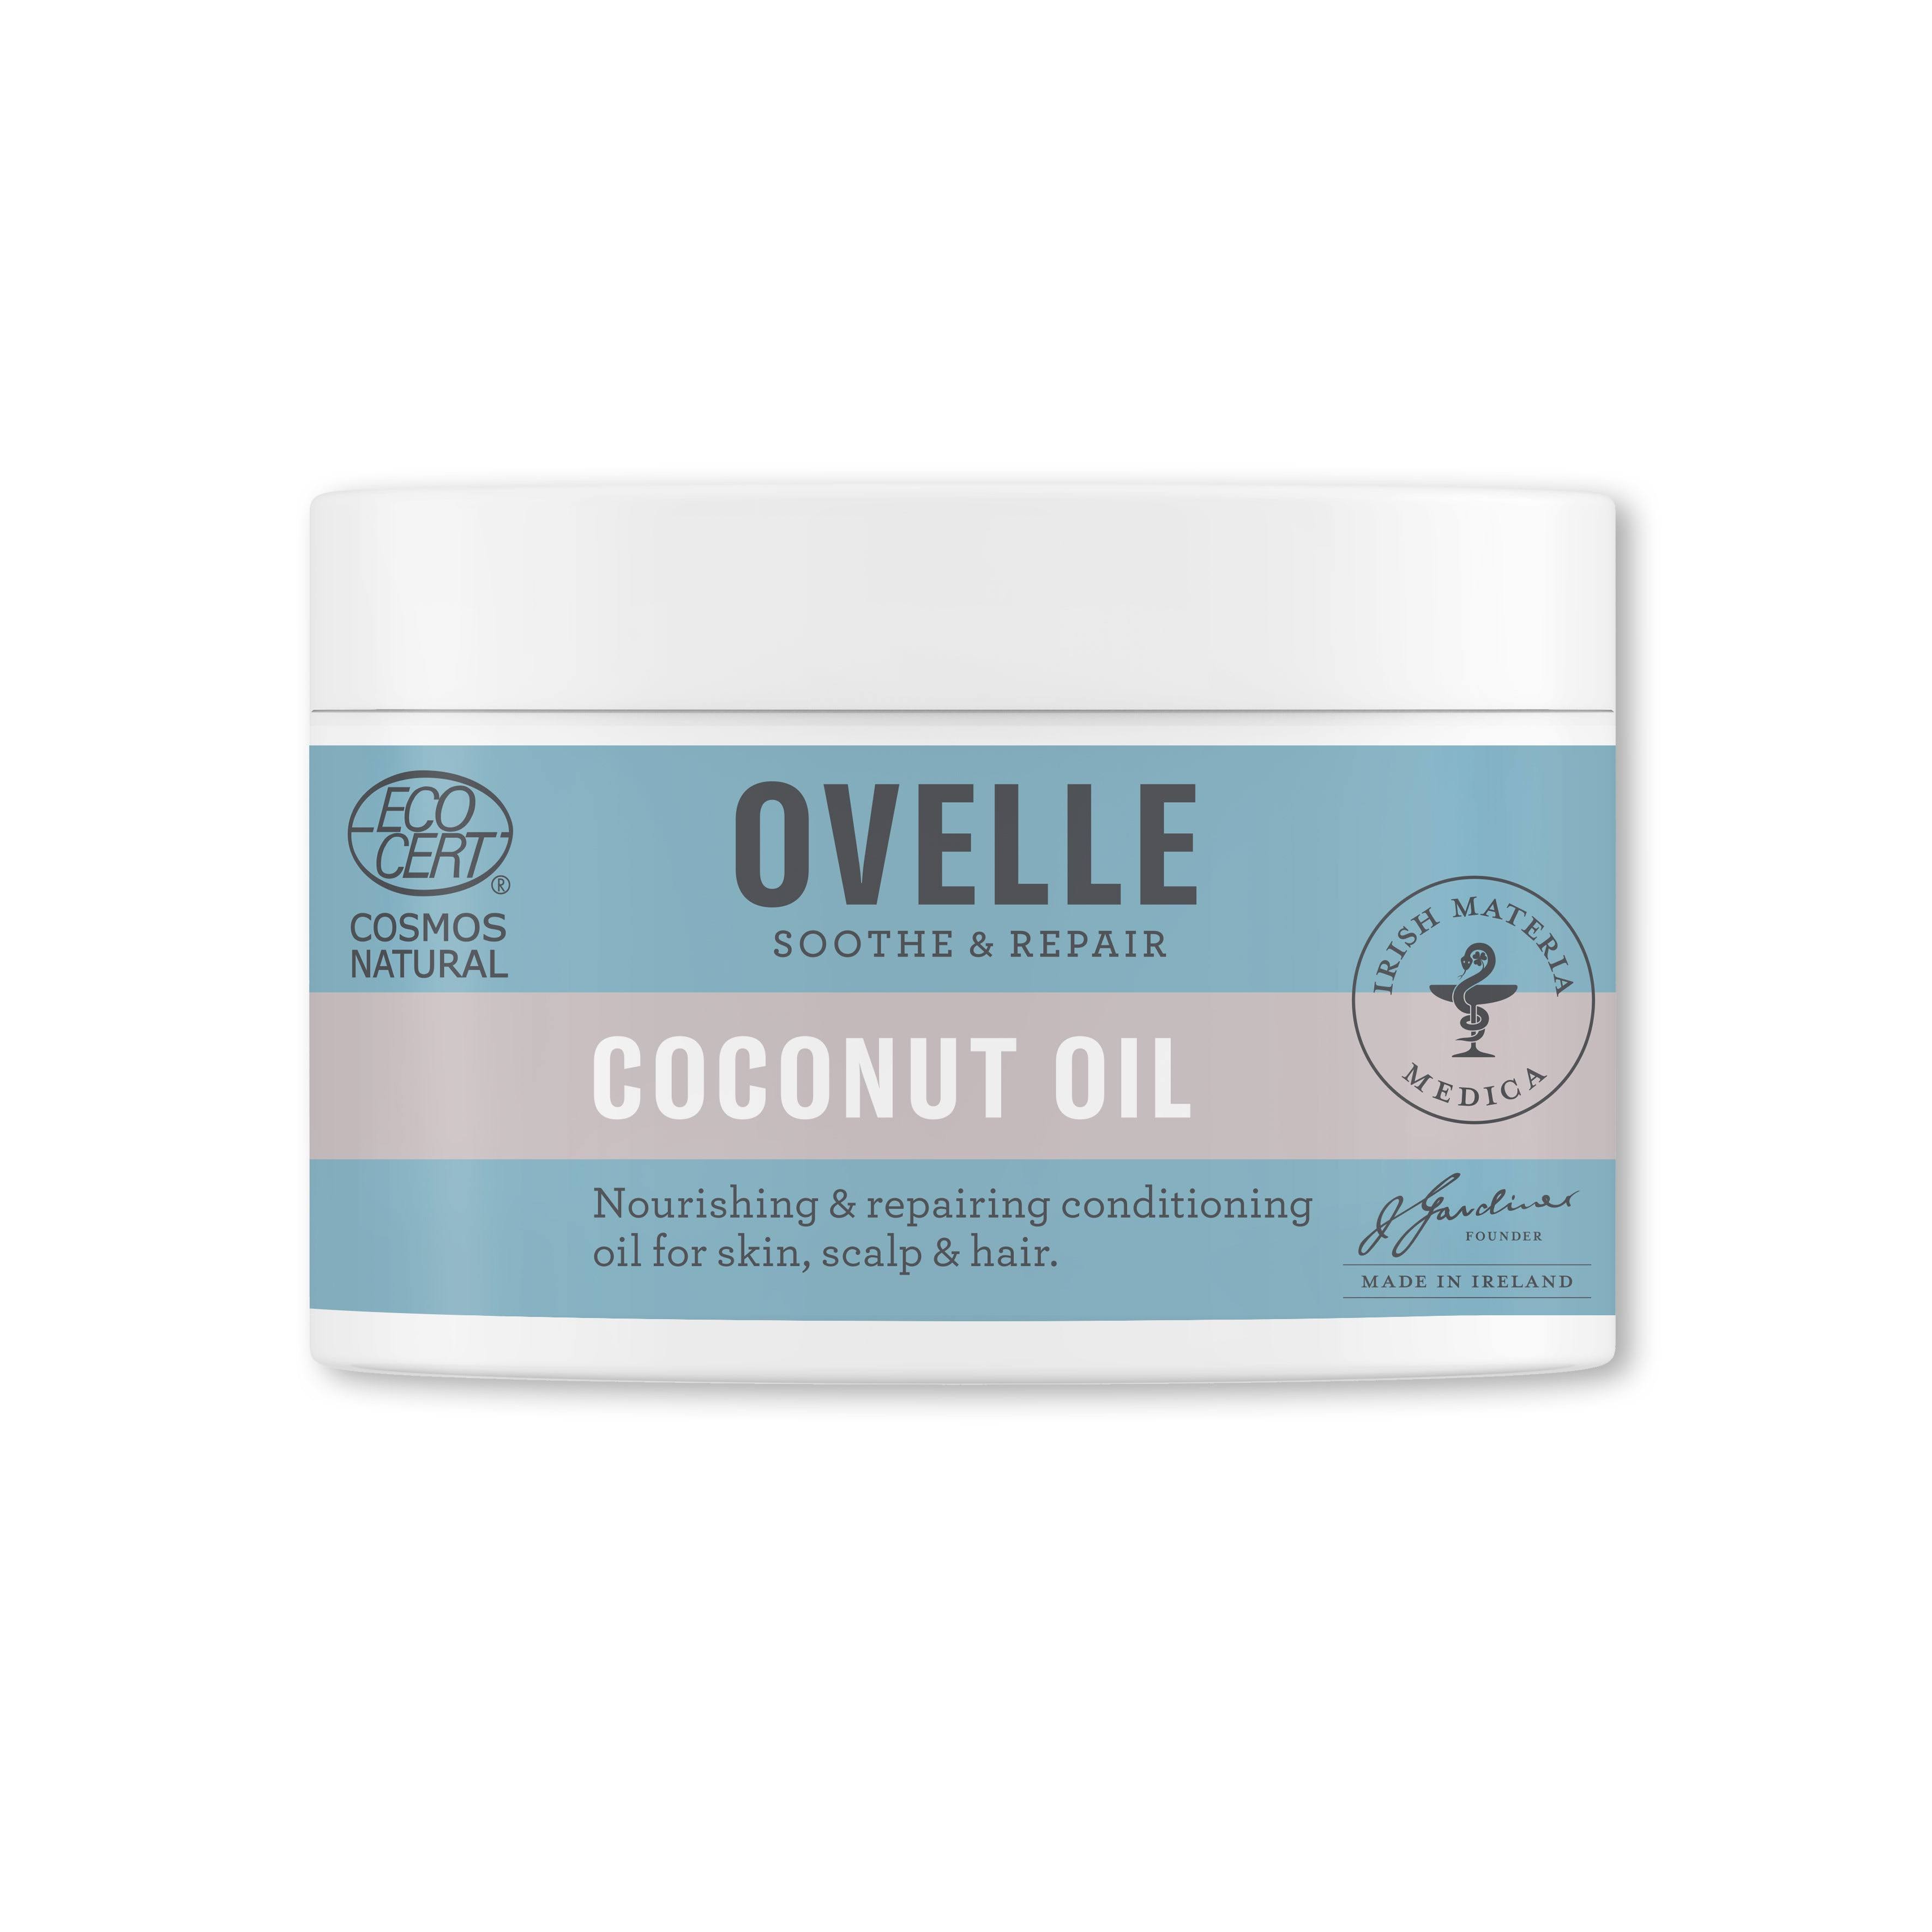 Ovelle Coconut Oil Emollient Moisturiser 100g